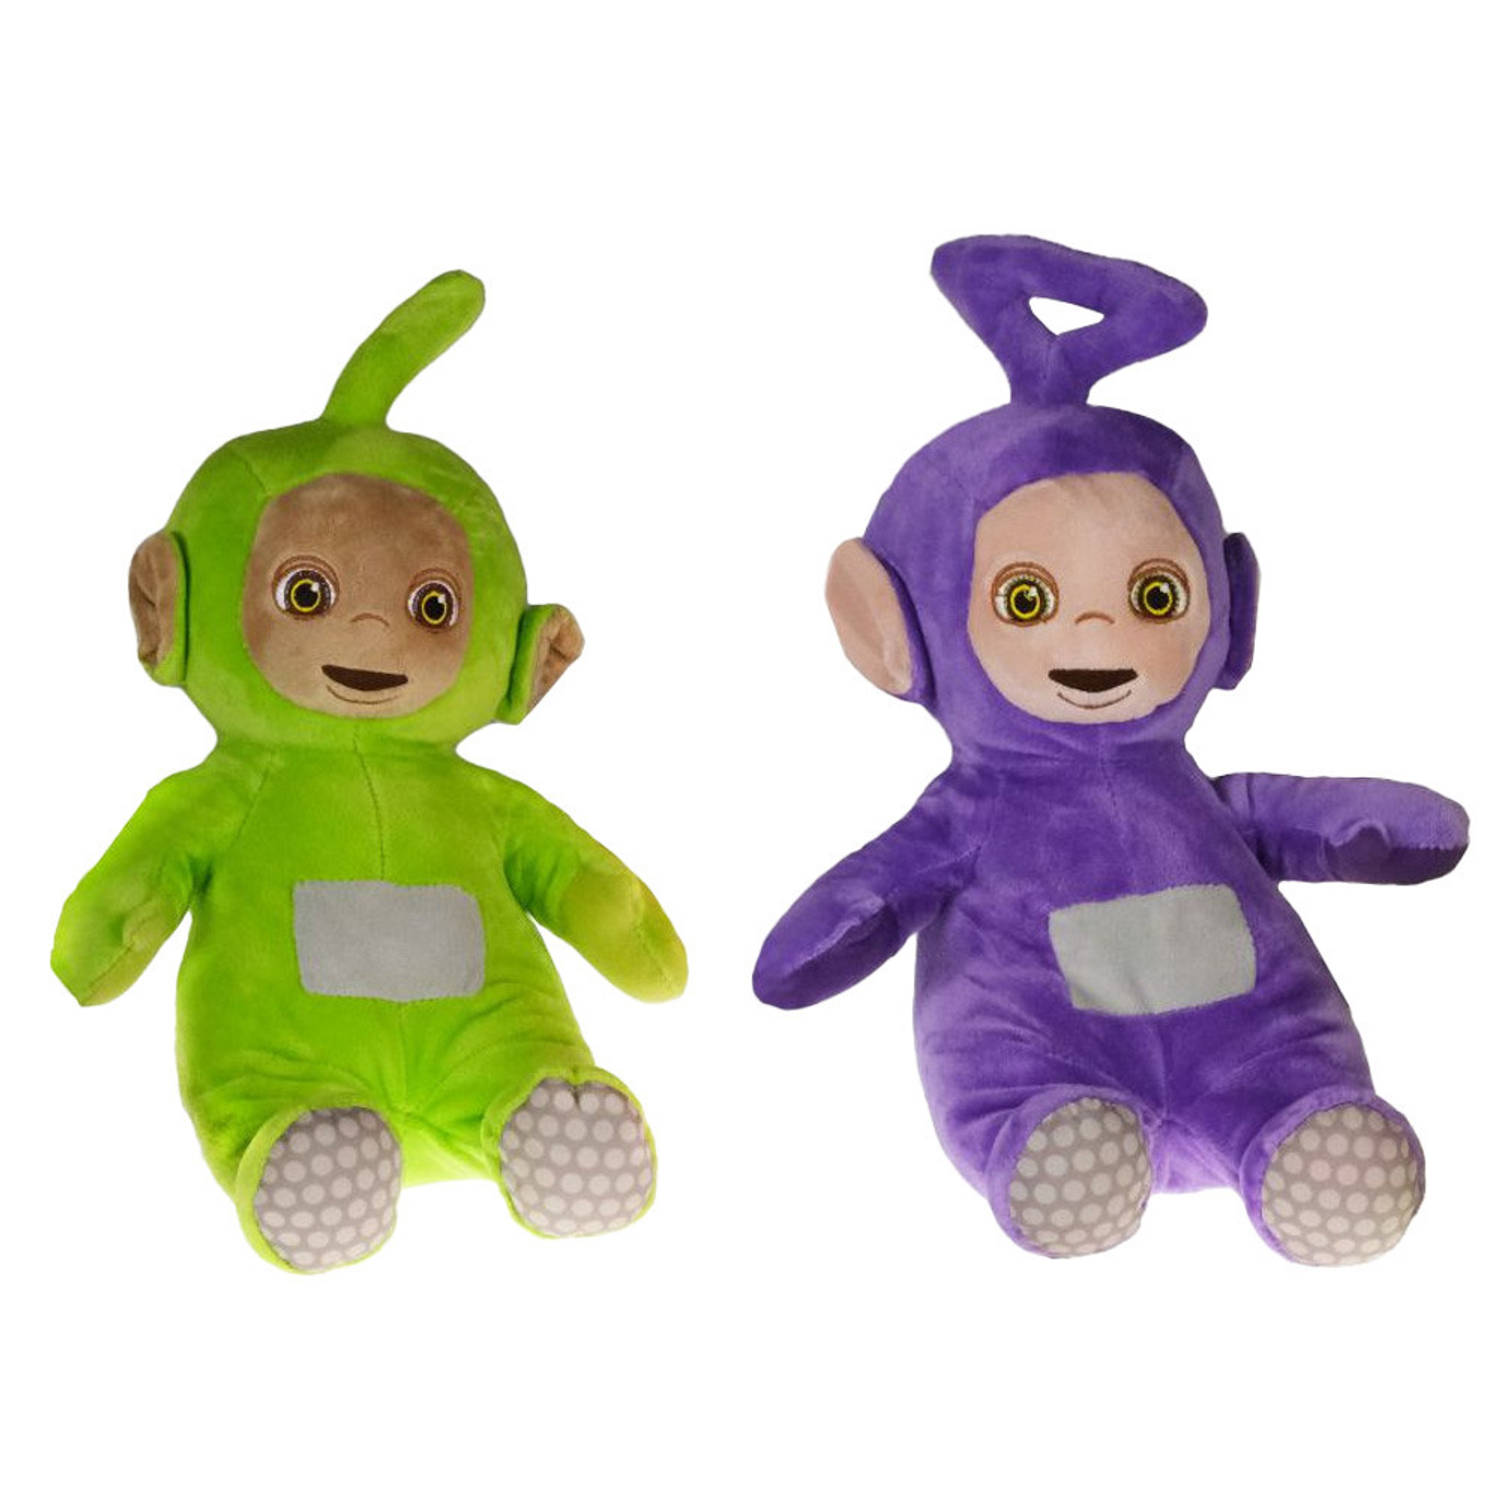 Pluche Teletubbies speelgoed set knuffel Tinky Winky en Dipsey 30 cm Knuffelpop